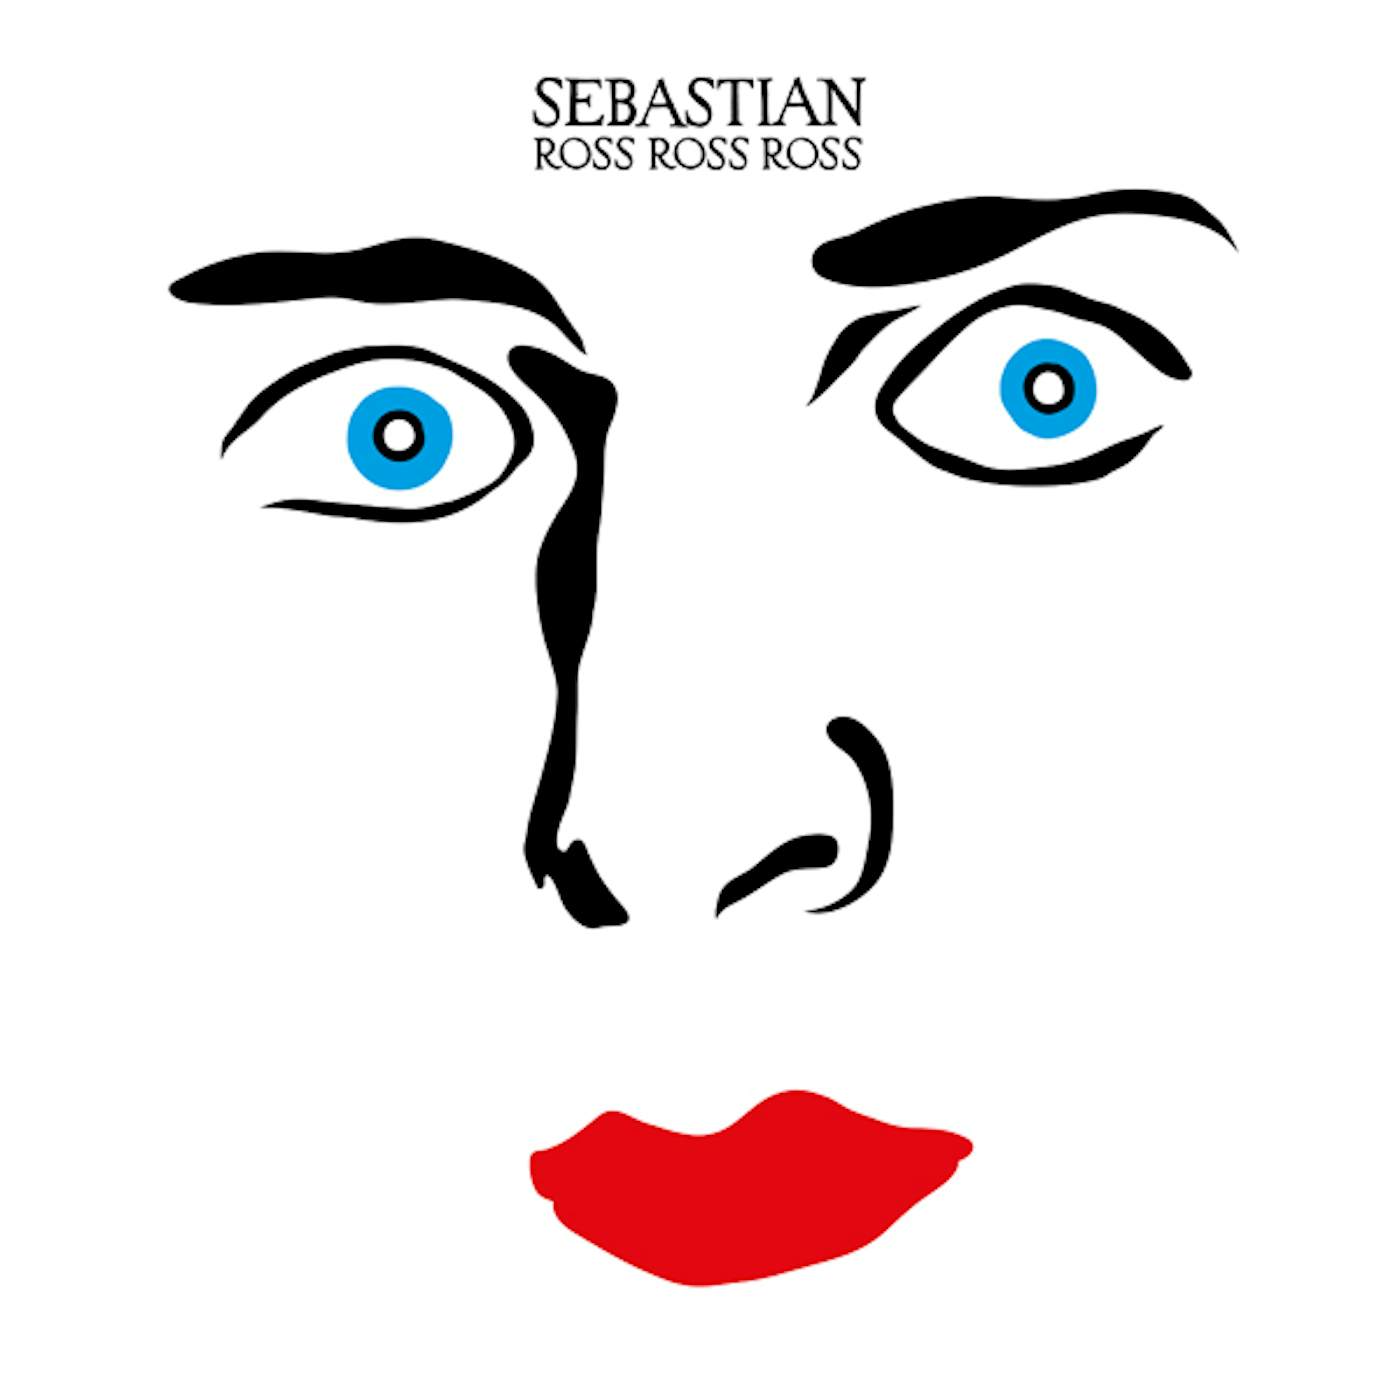 SebastiAn ROSS ROSS ROSS (2017 EDITION) Vinyl Record